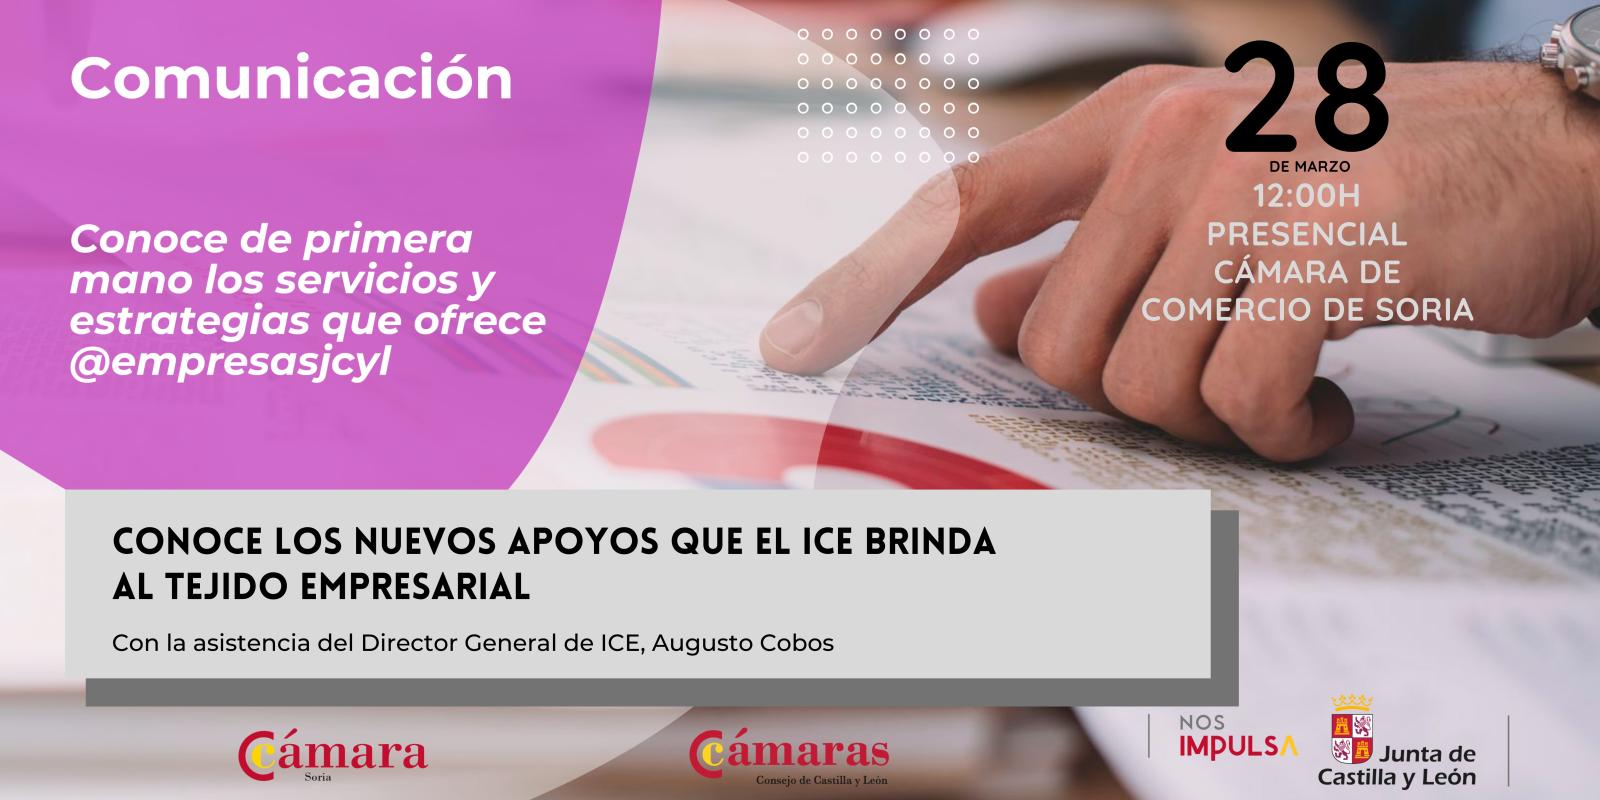 La Cámara de Comercio de Soria y la Junta de Castilla y León organizan una jornada para informar a empresas y personas emprendedoras de todas las líneas de ayudas destinadas al tejido empresarial